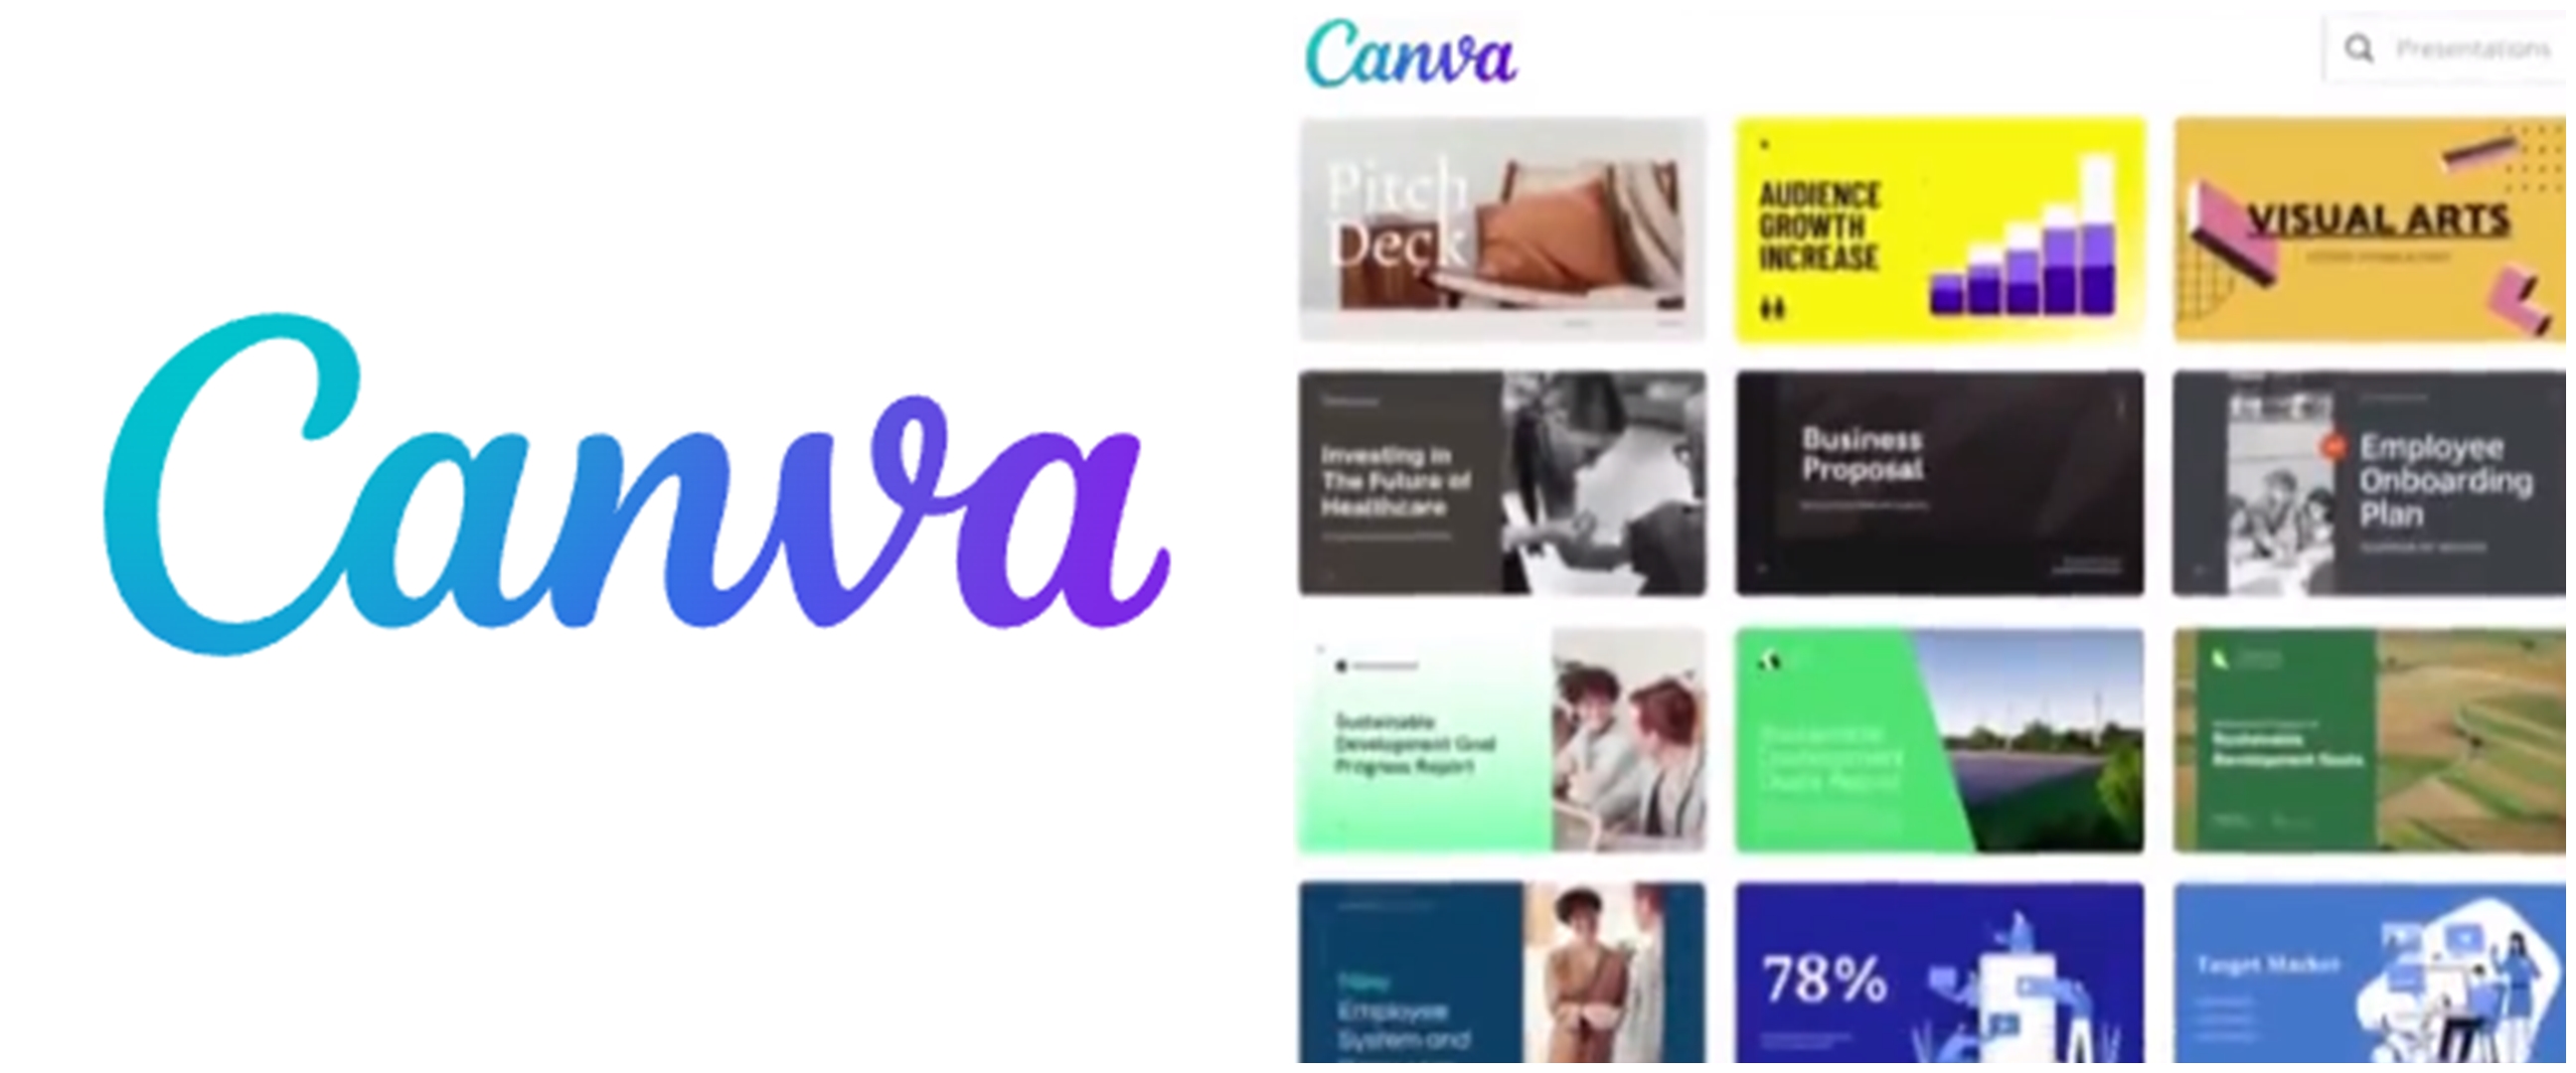 Cara download dan instal Canva di laptop, mudah dan gratis